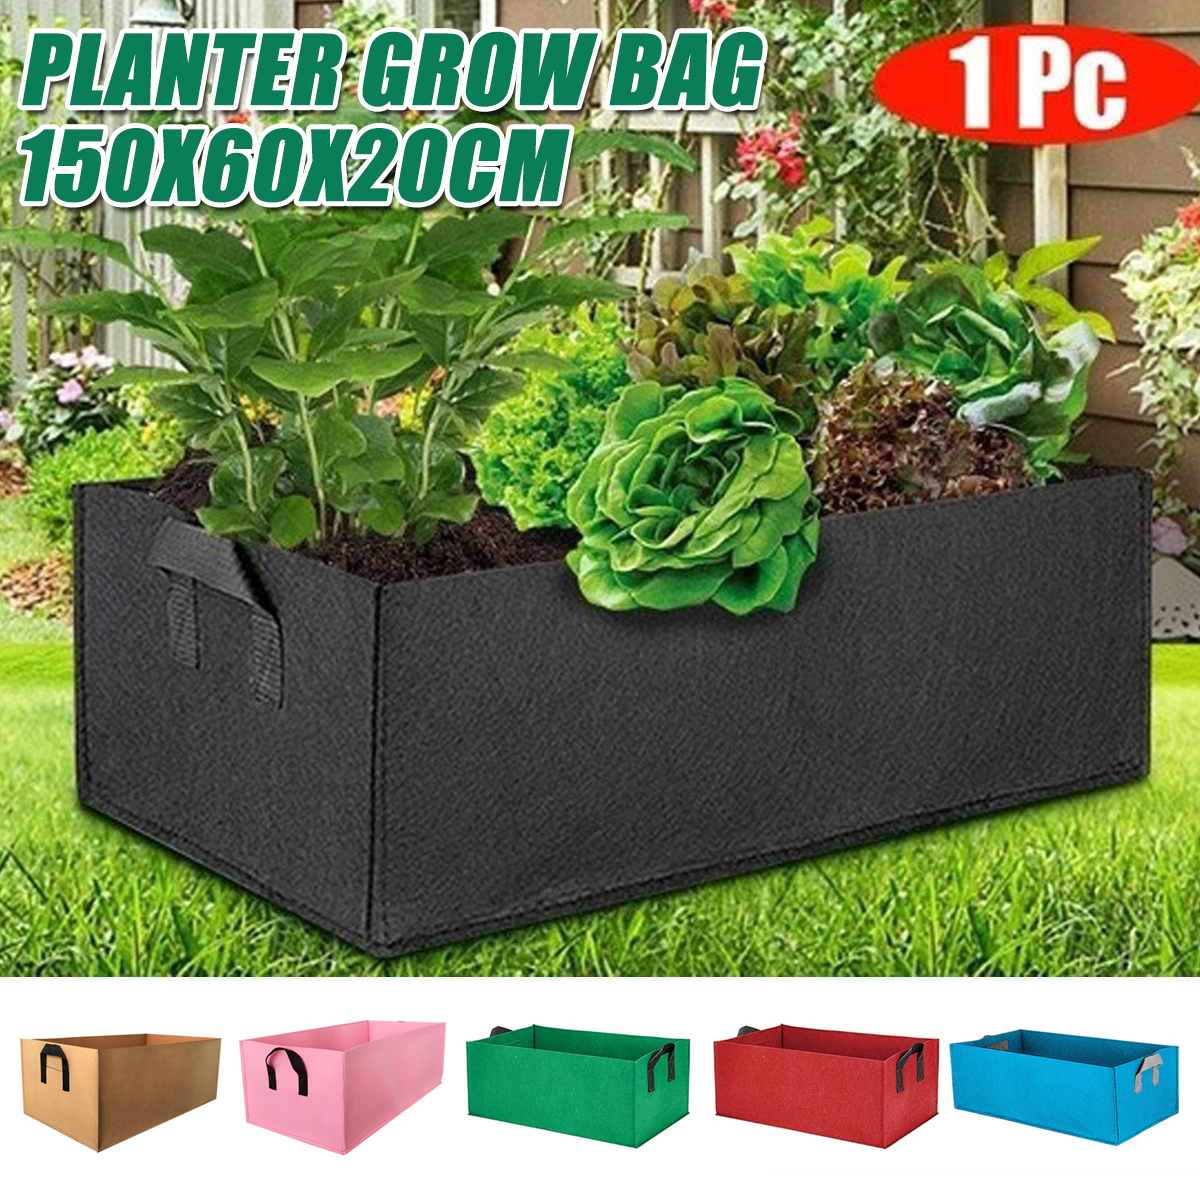 Garden-Planting-Grow-Bag-150x60x20cm-Fabric-Potato-Tomato-Planter-Outdoor-Box-1699882-1